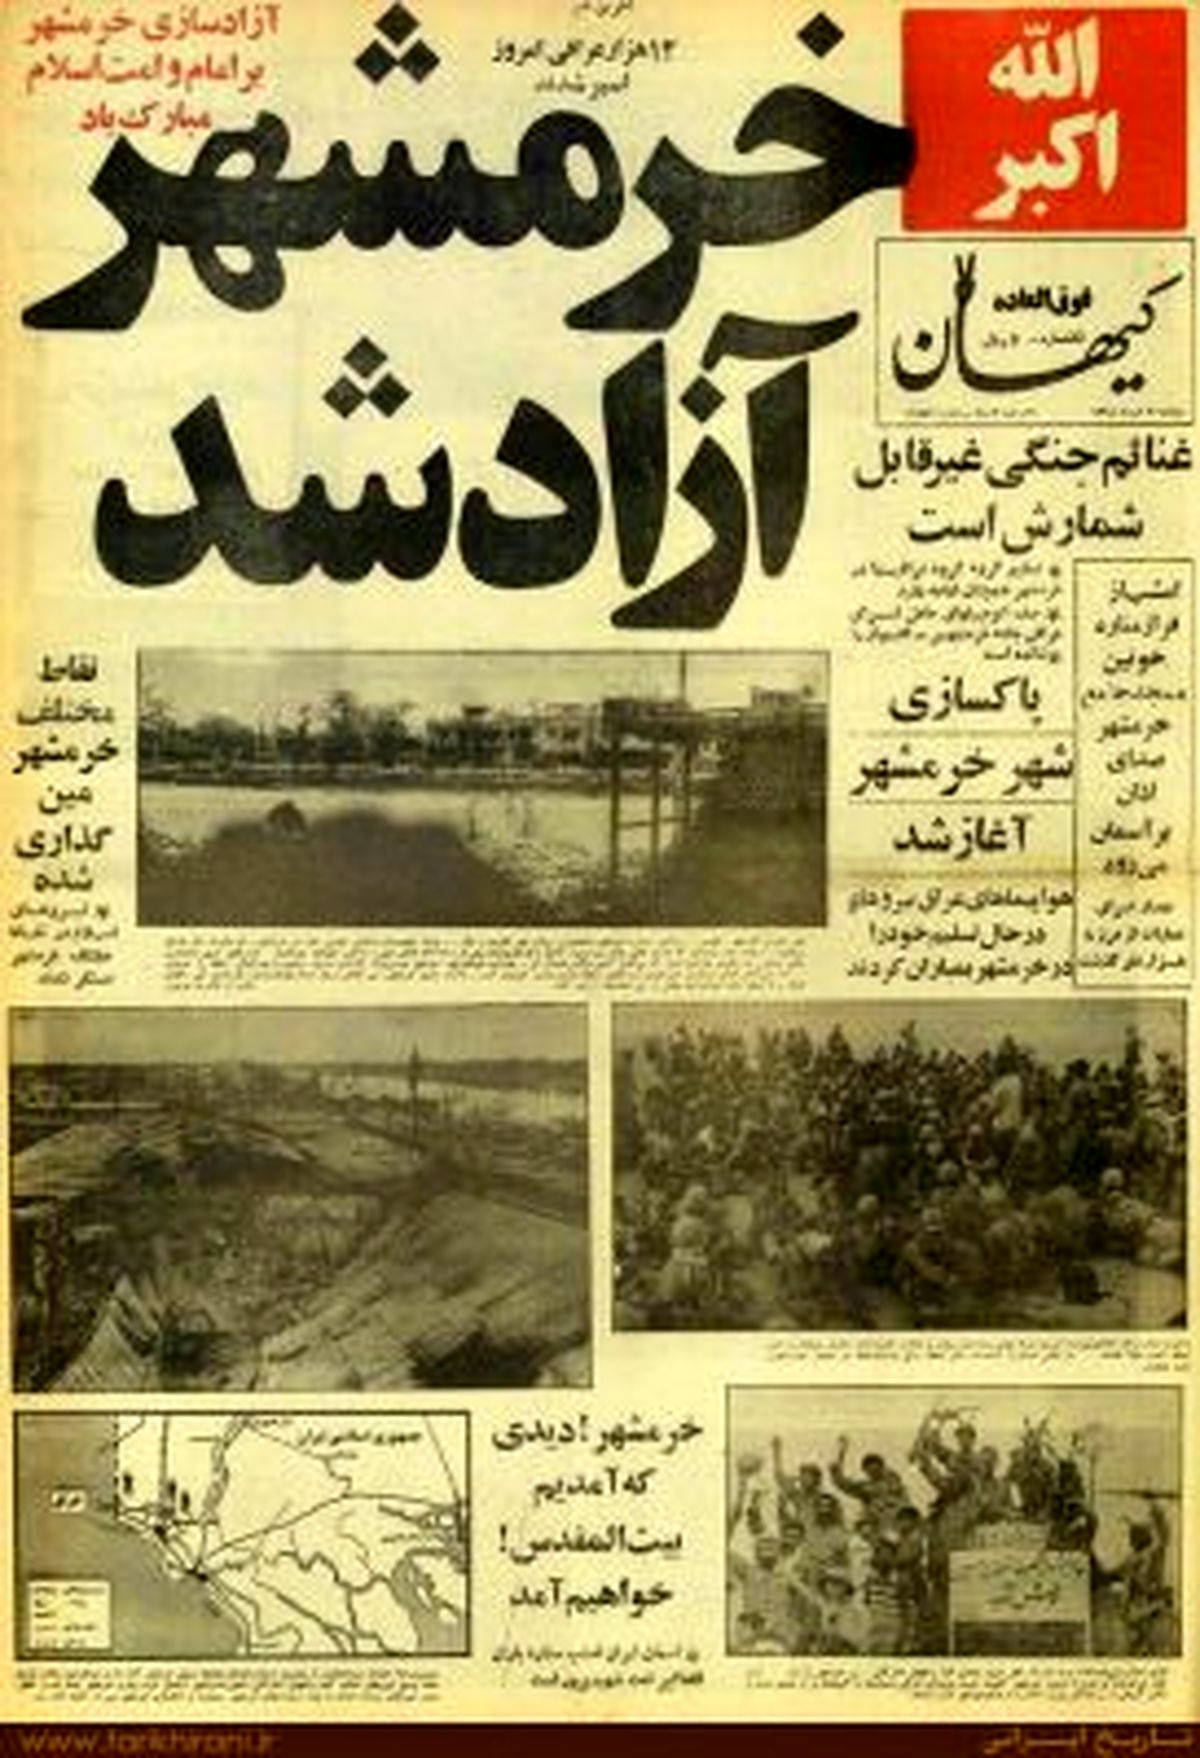 روزنامه نوستالژیک به مناسبت آزادسازی خرمشهر